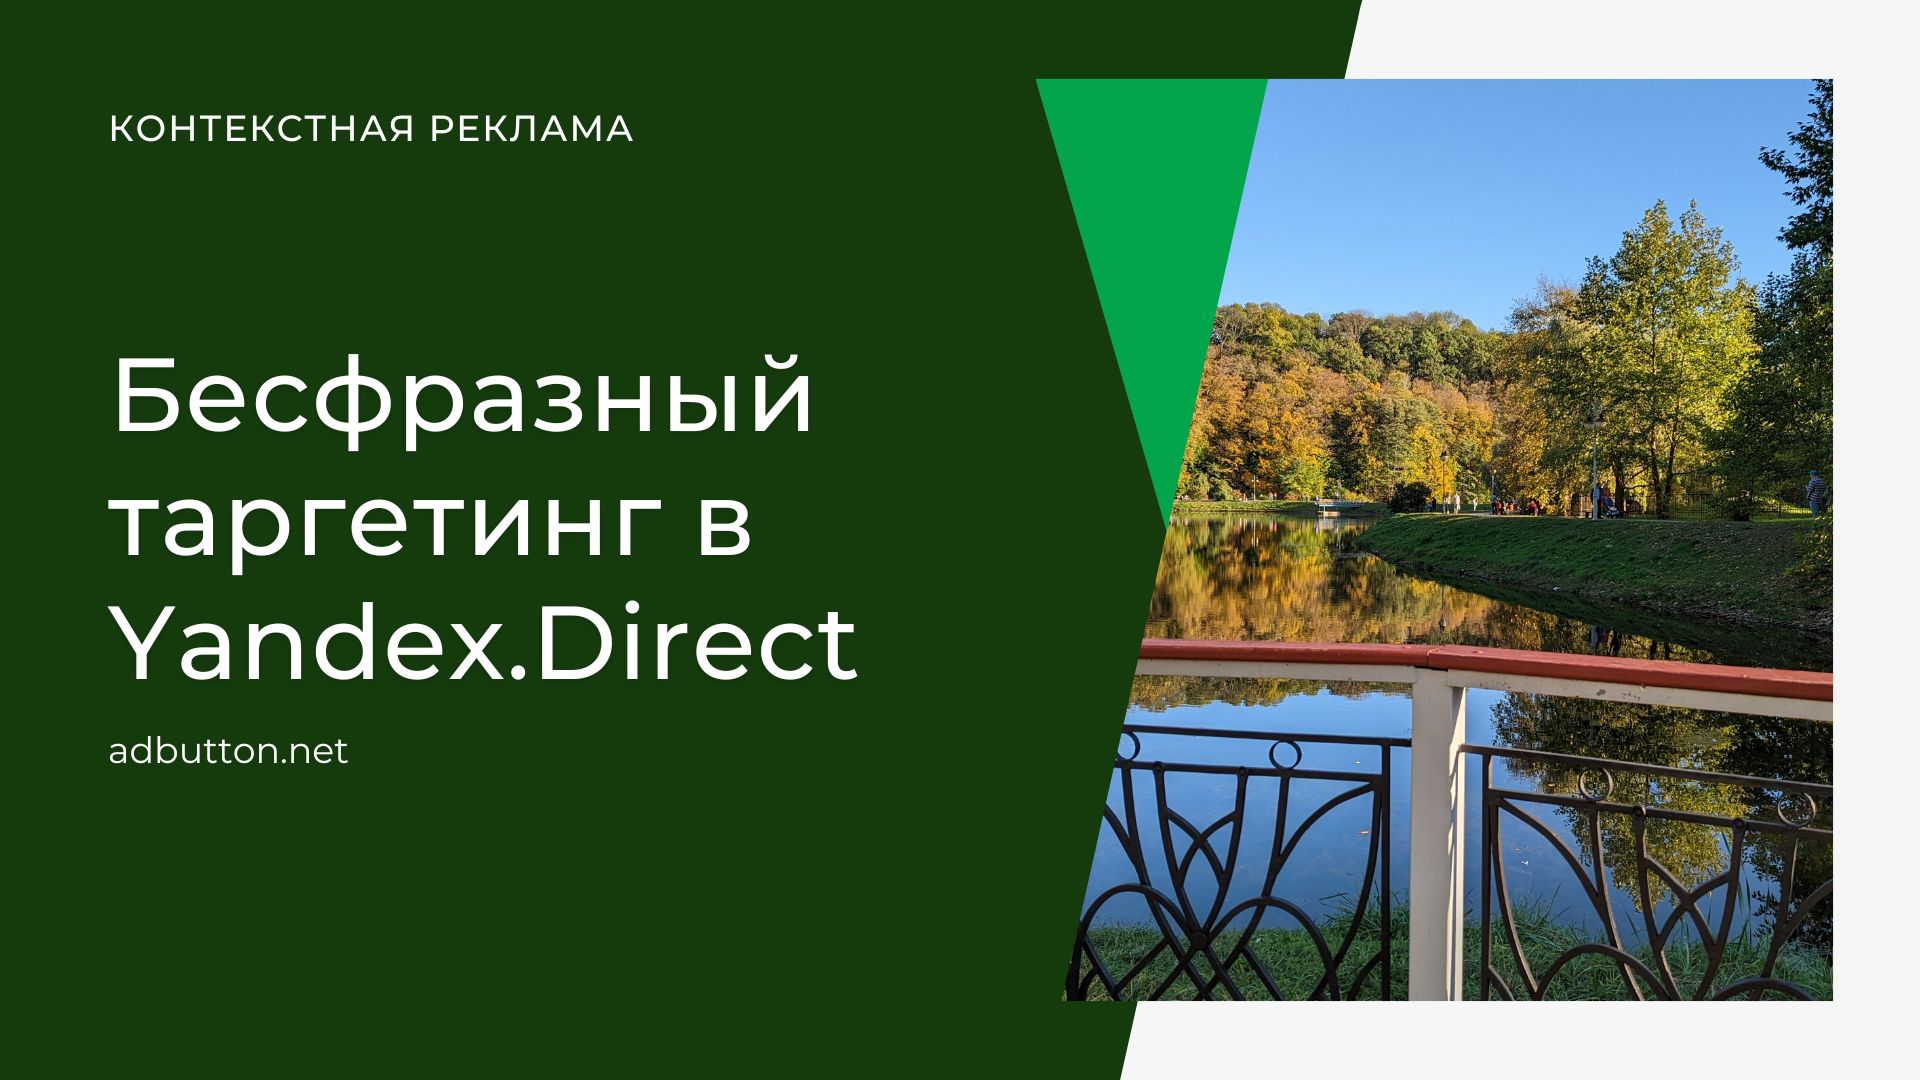 Бесфразный таргетинг в Yandex.Direct — алгоритм подбора ключевых фраз